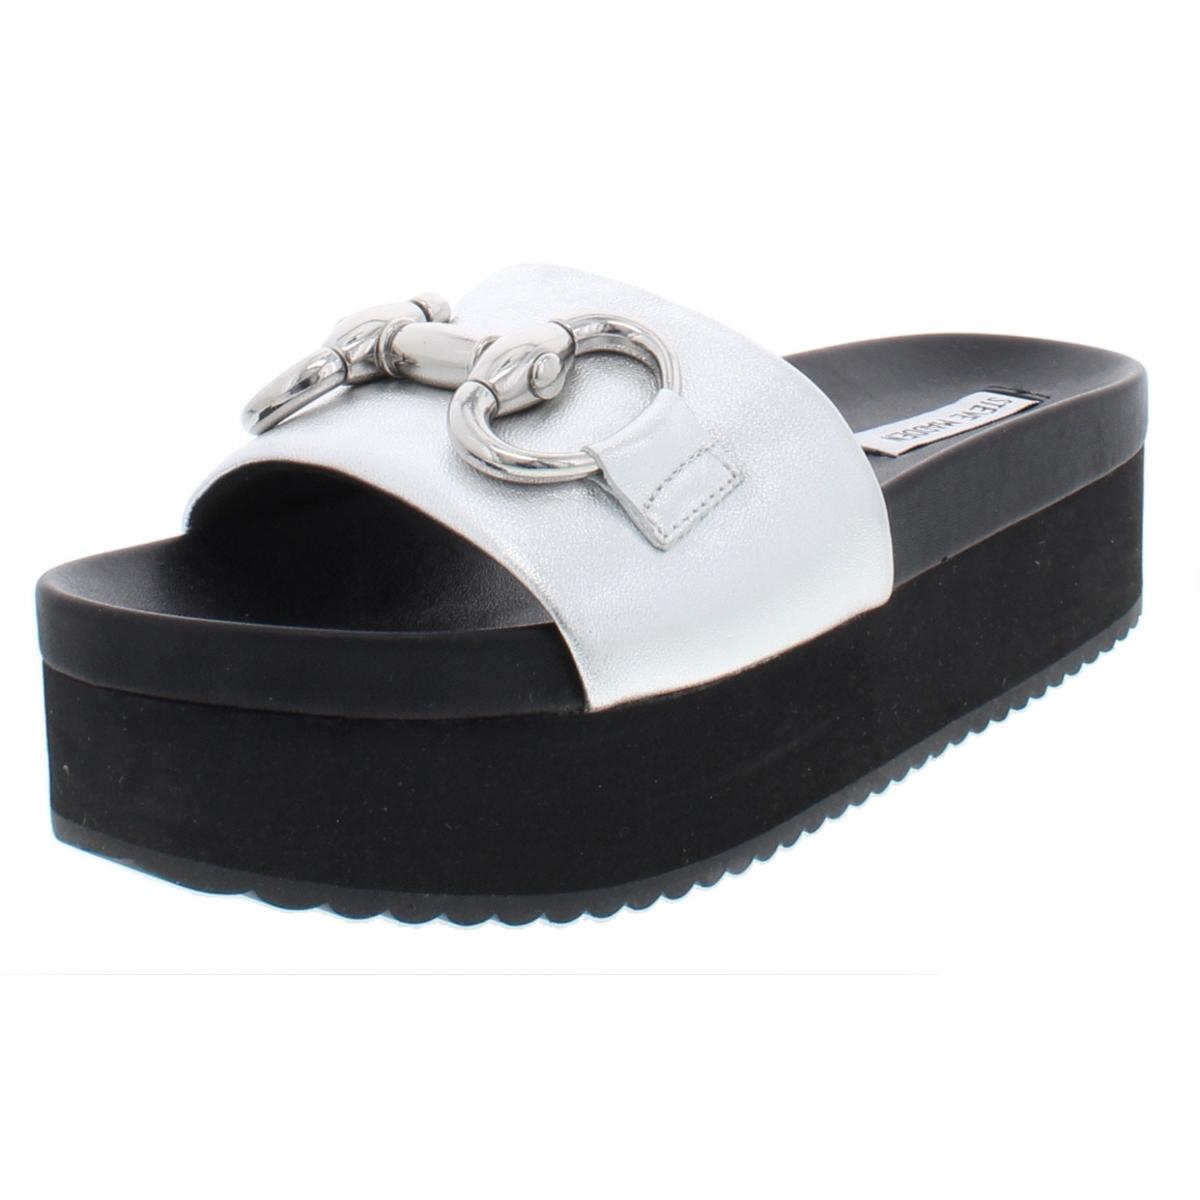 Steve Madden Womens Open Toe Slide Sandals Platforms | eBay